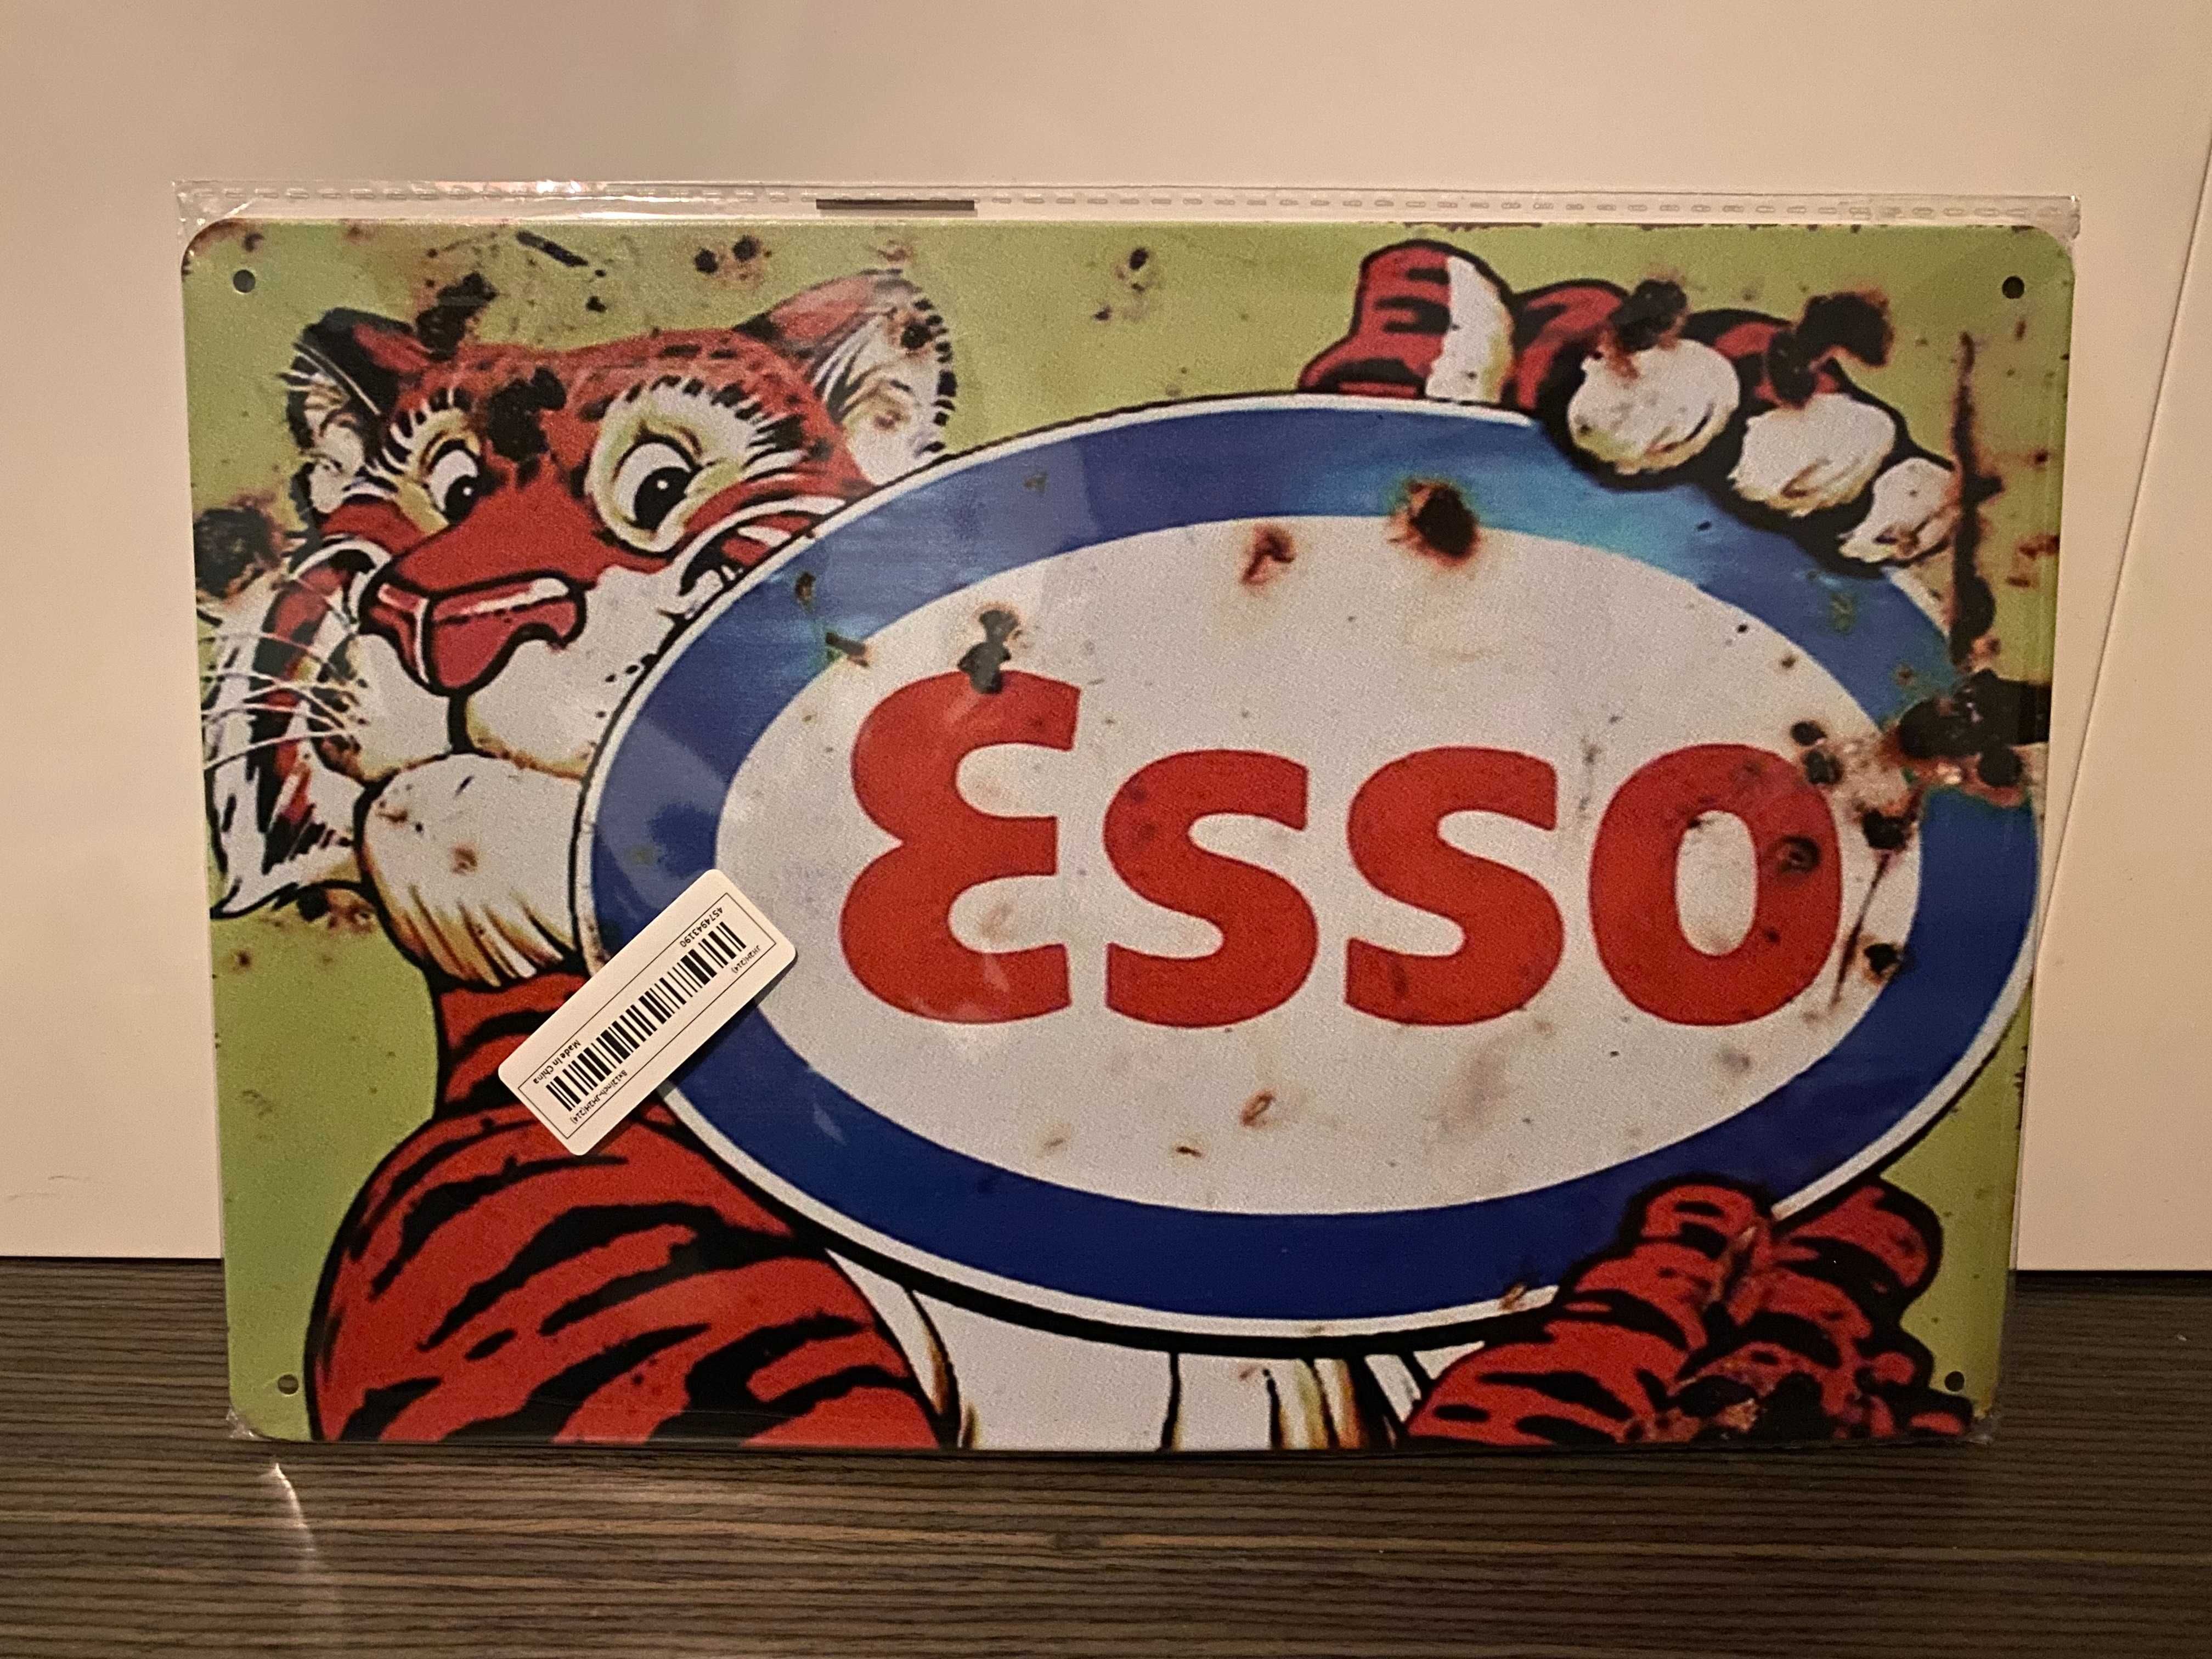 Decoração - Placa de Metal "Esso" - Nova, Selada